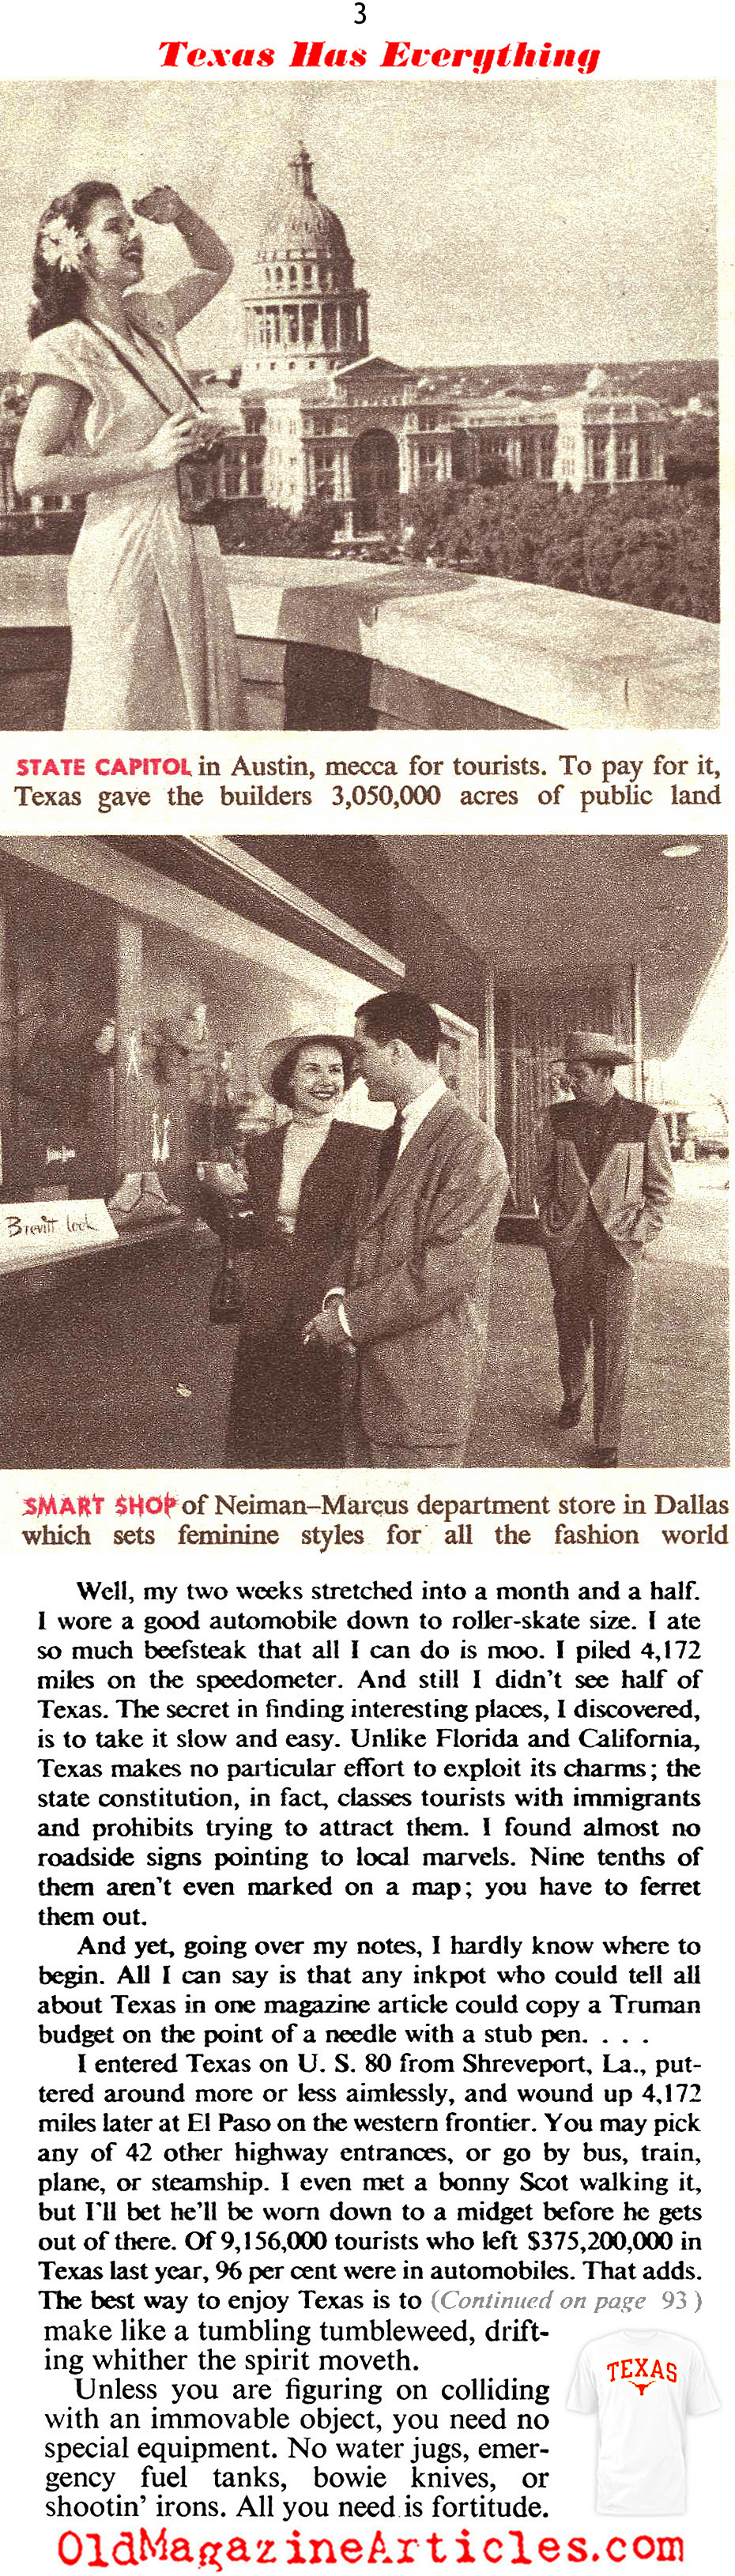 1950s Texas (American Magazine, 1952)